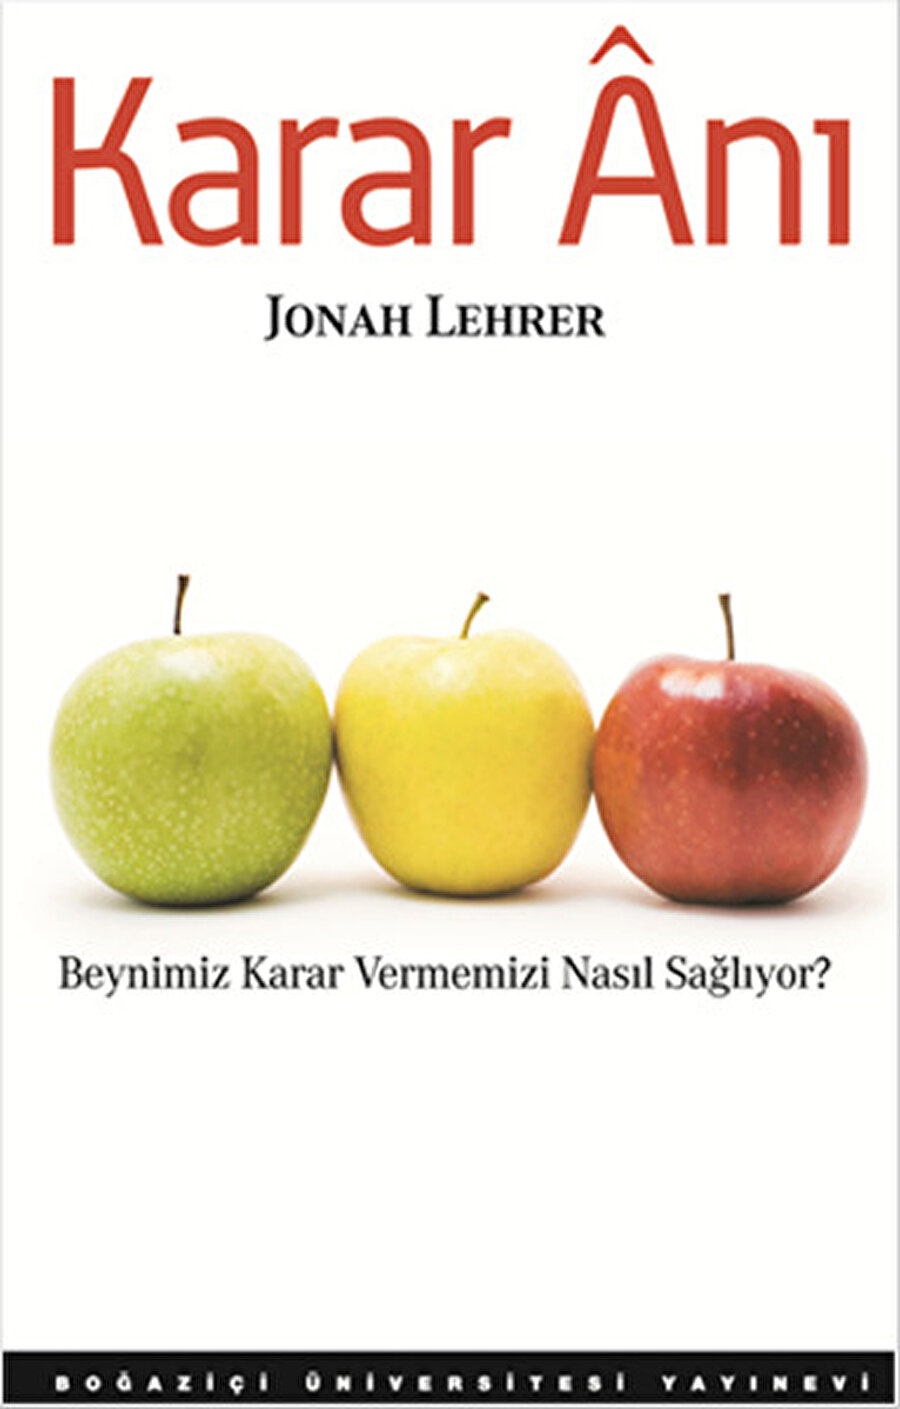 Jonah Lehrer - Karar Anı
